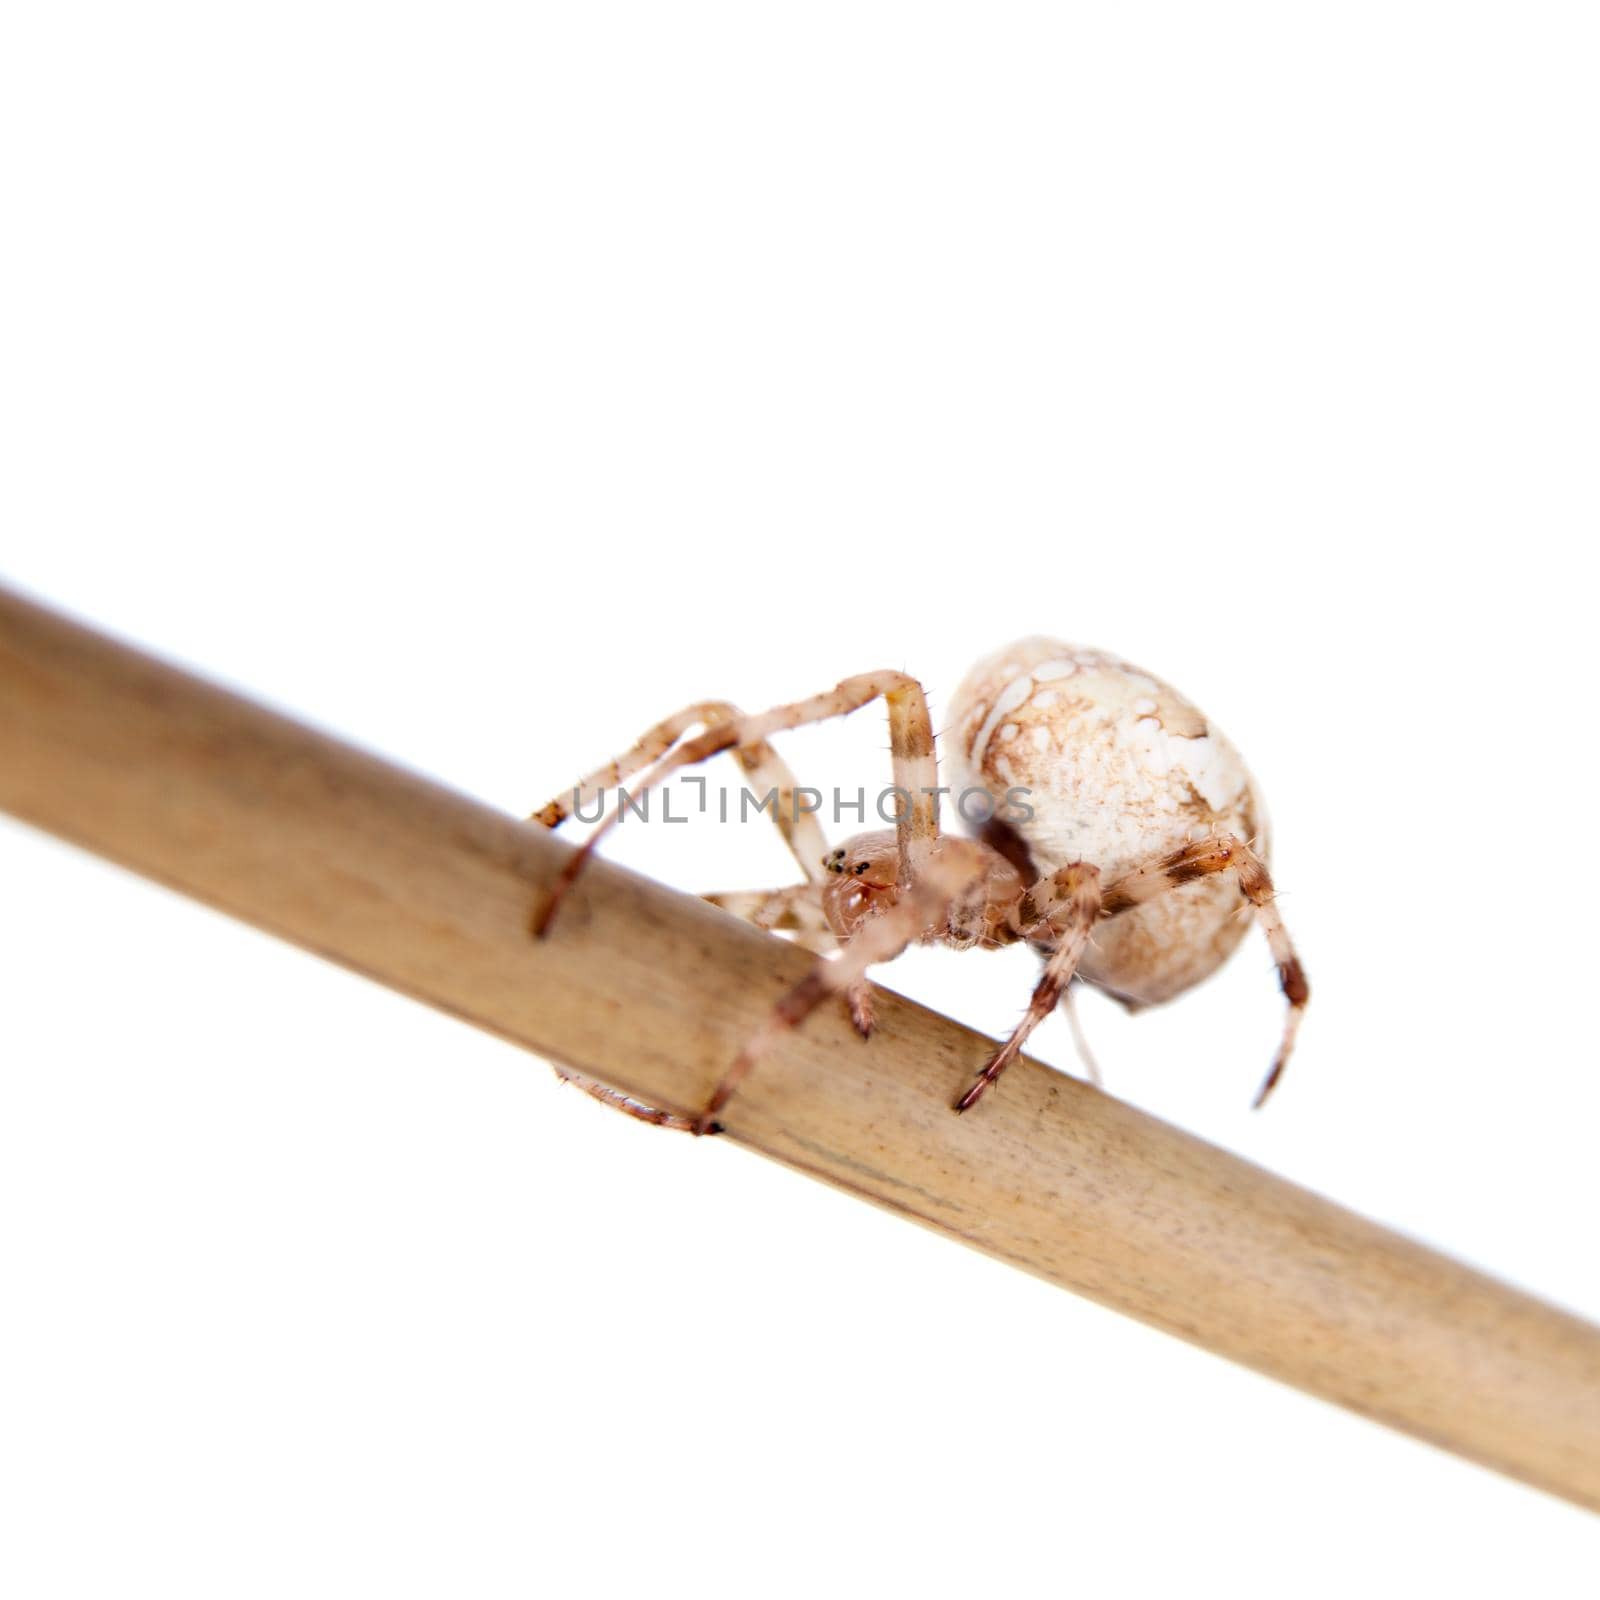 The european garden spider, araneus diadematus, female on white by RosaJay